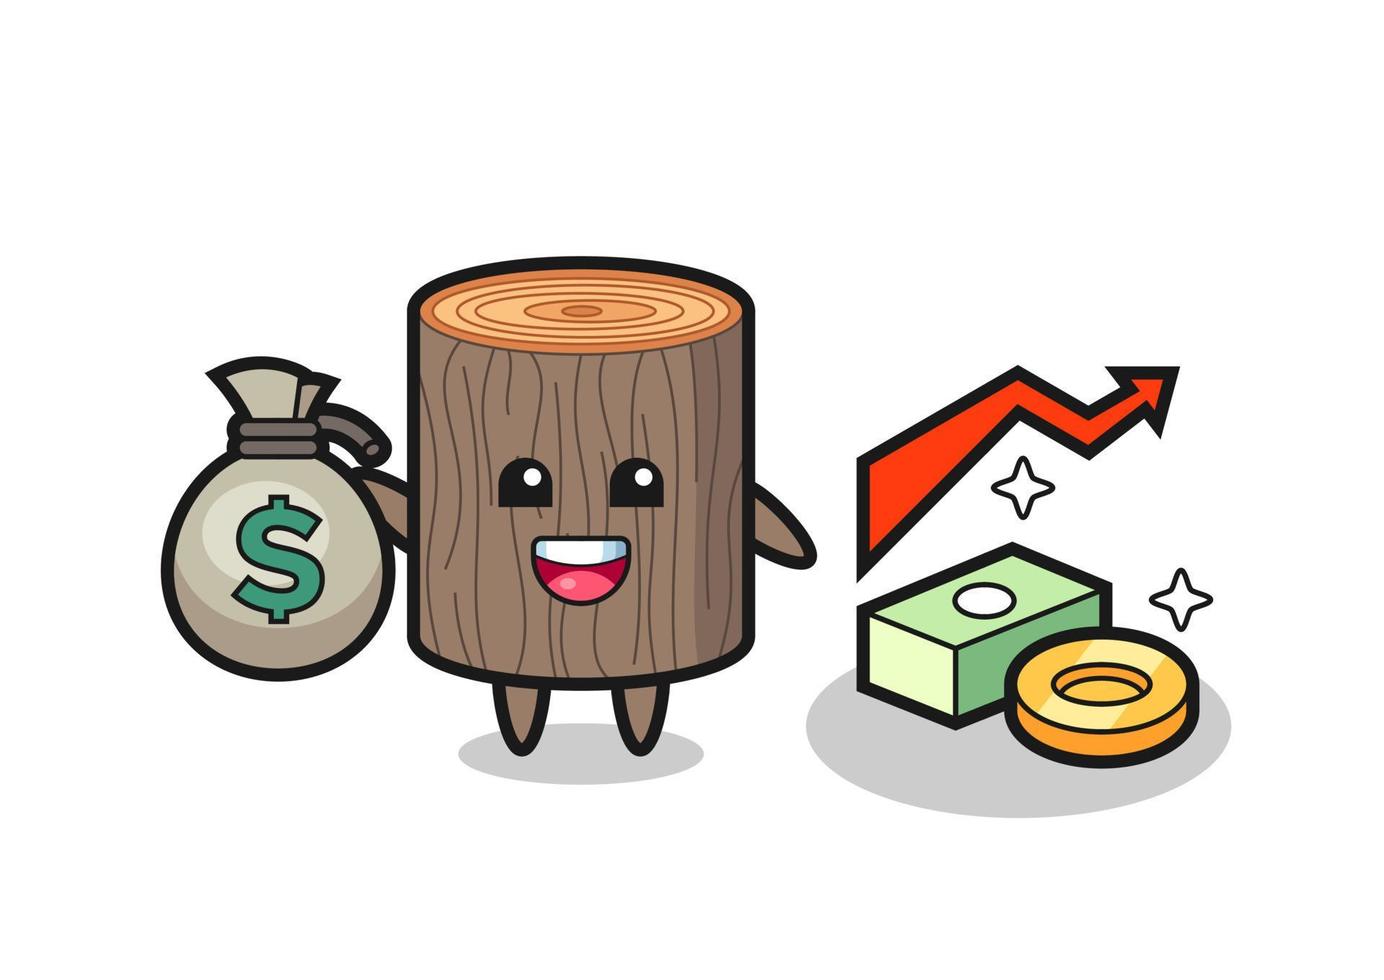 trädstubbe illustration tecknad hålla pengar säck vektor